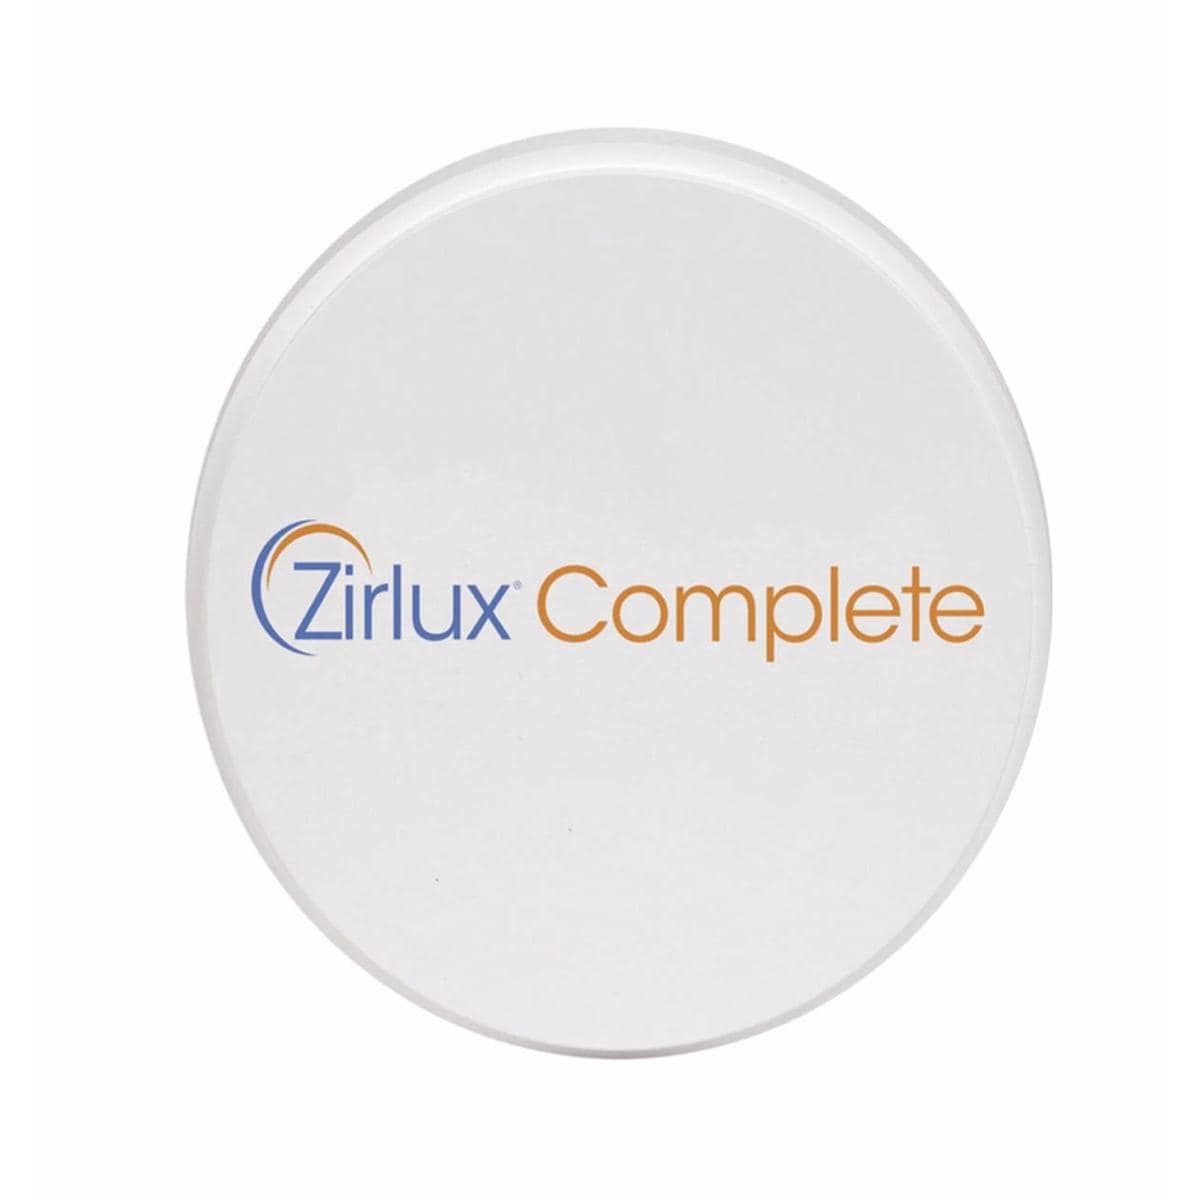 Zirlux Complete B4 98.5x18mm